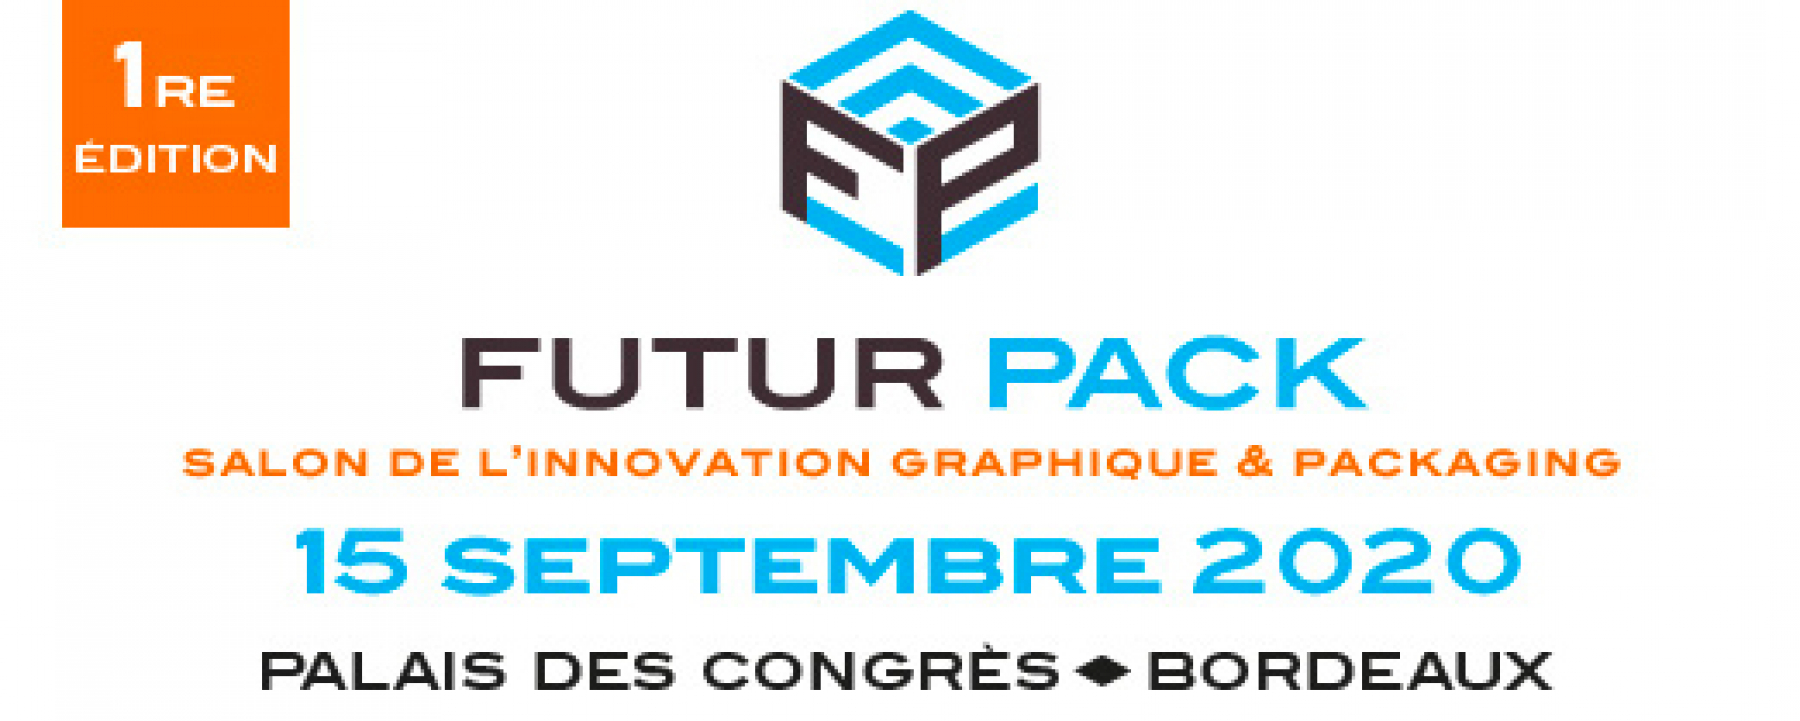 Salon Futur Pack, organisé par Atlanpack, le 15 septembre 2020